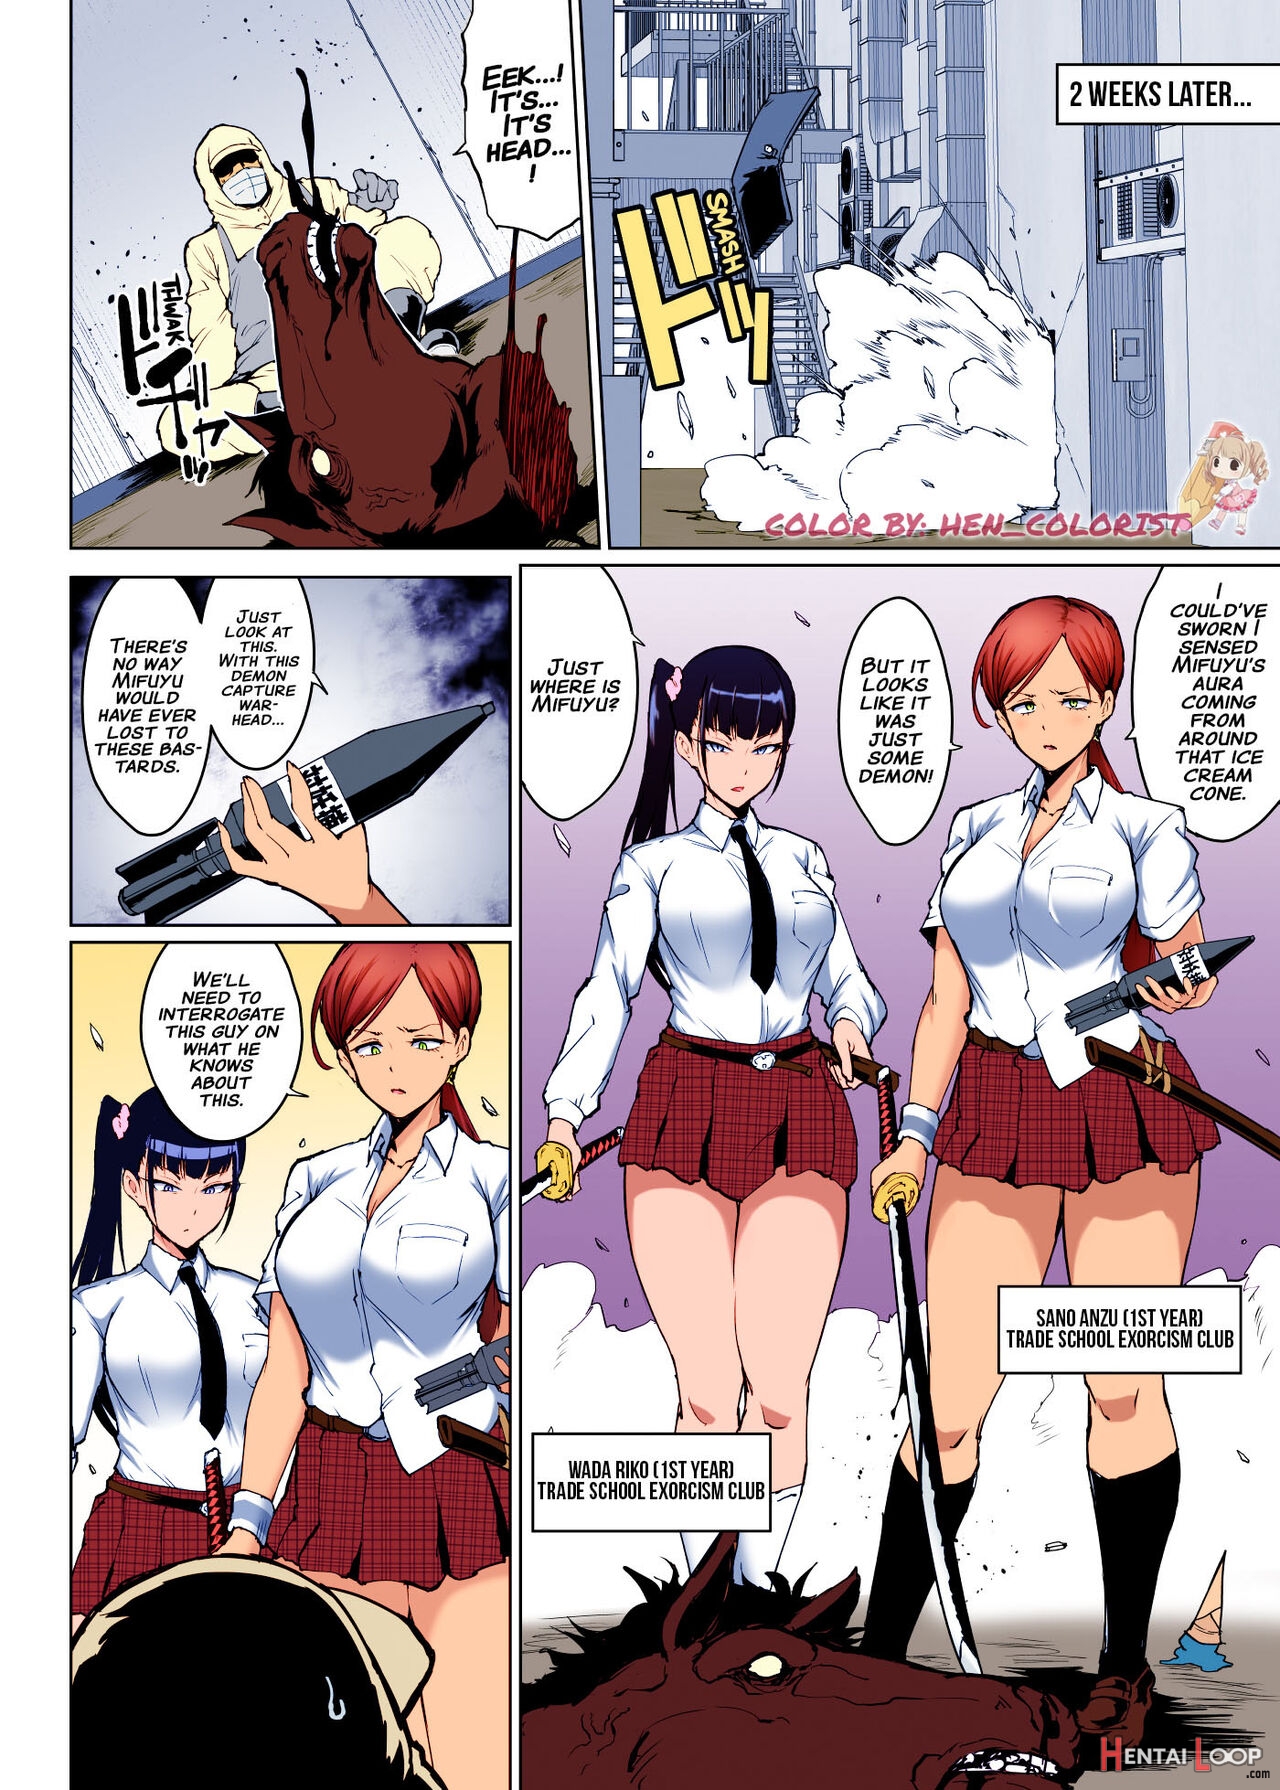 Shinyuu Ryoujoku Manga page 1